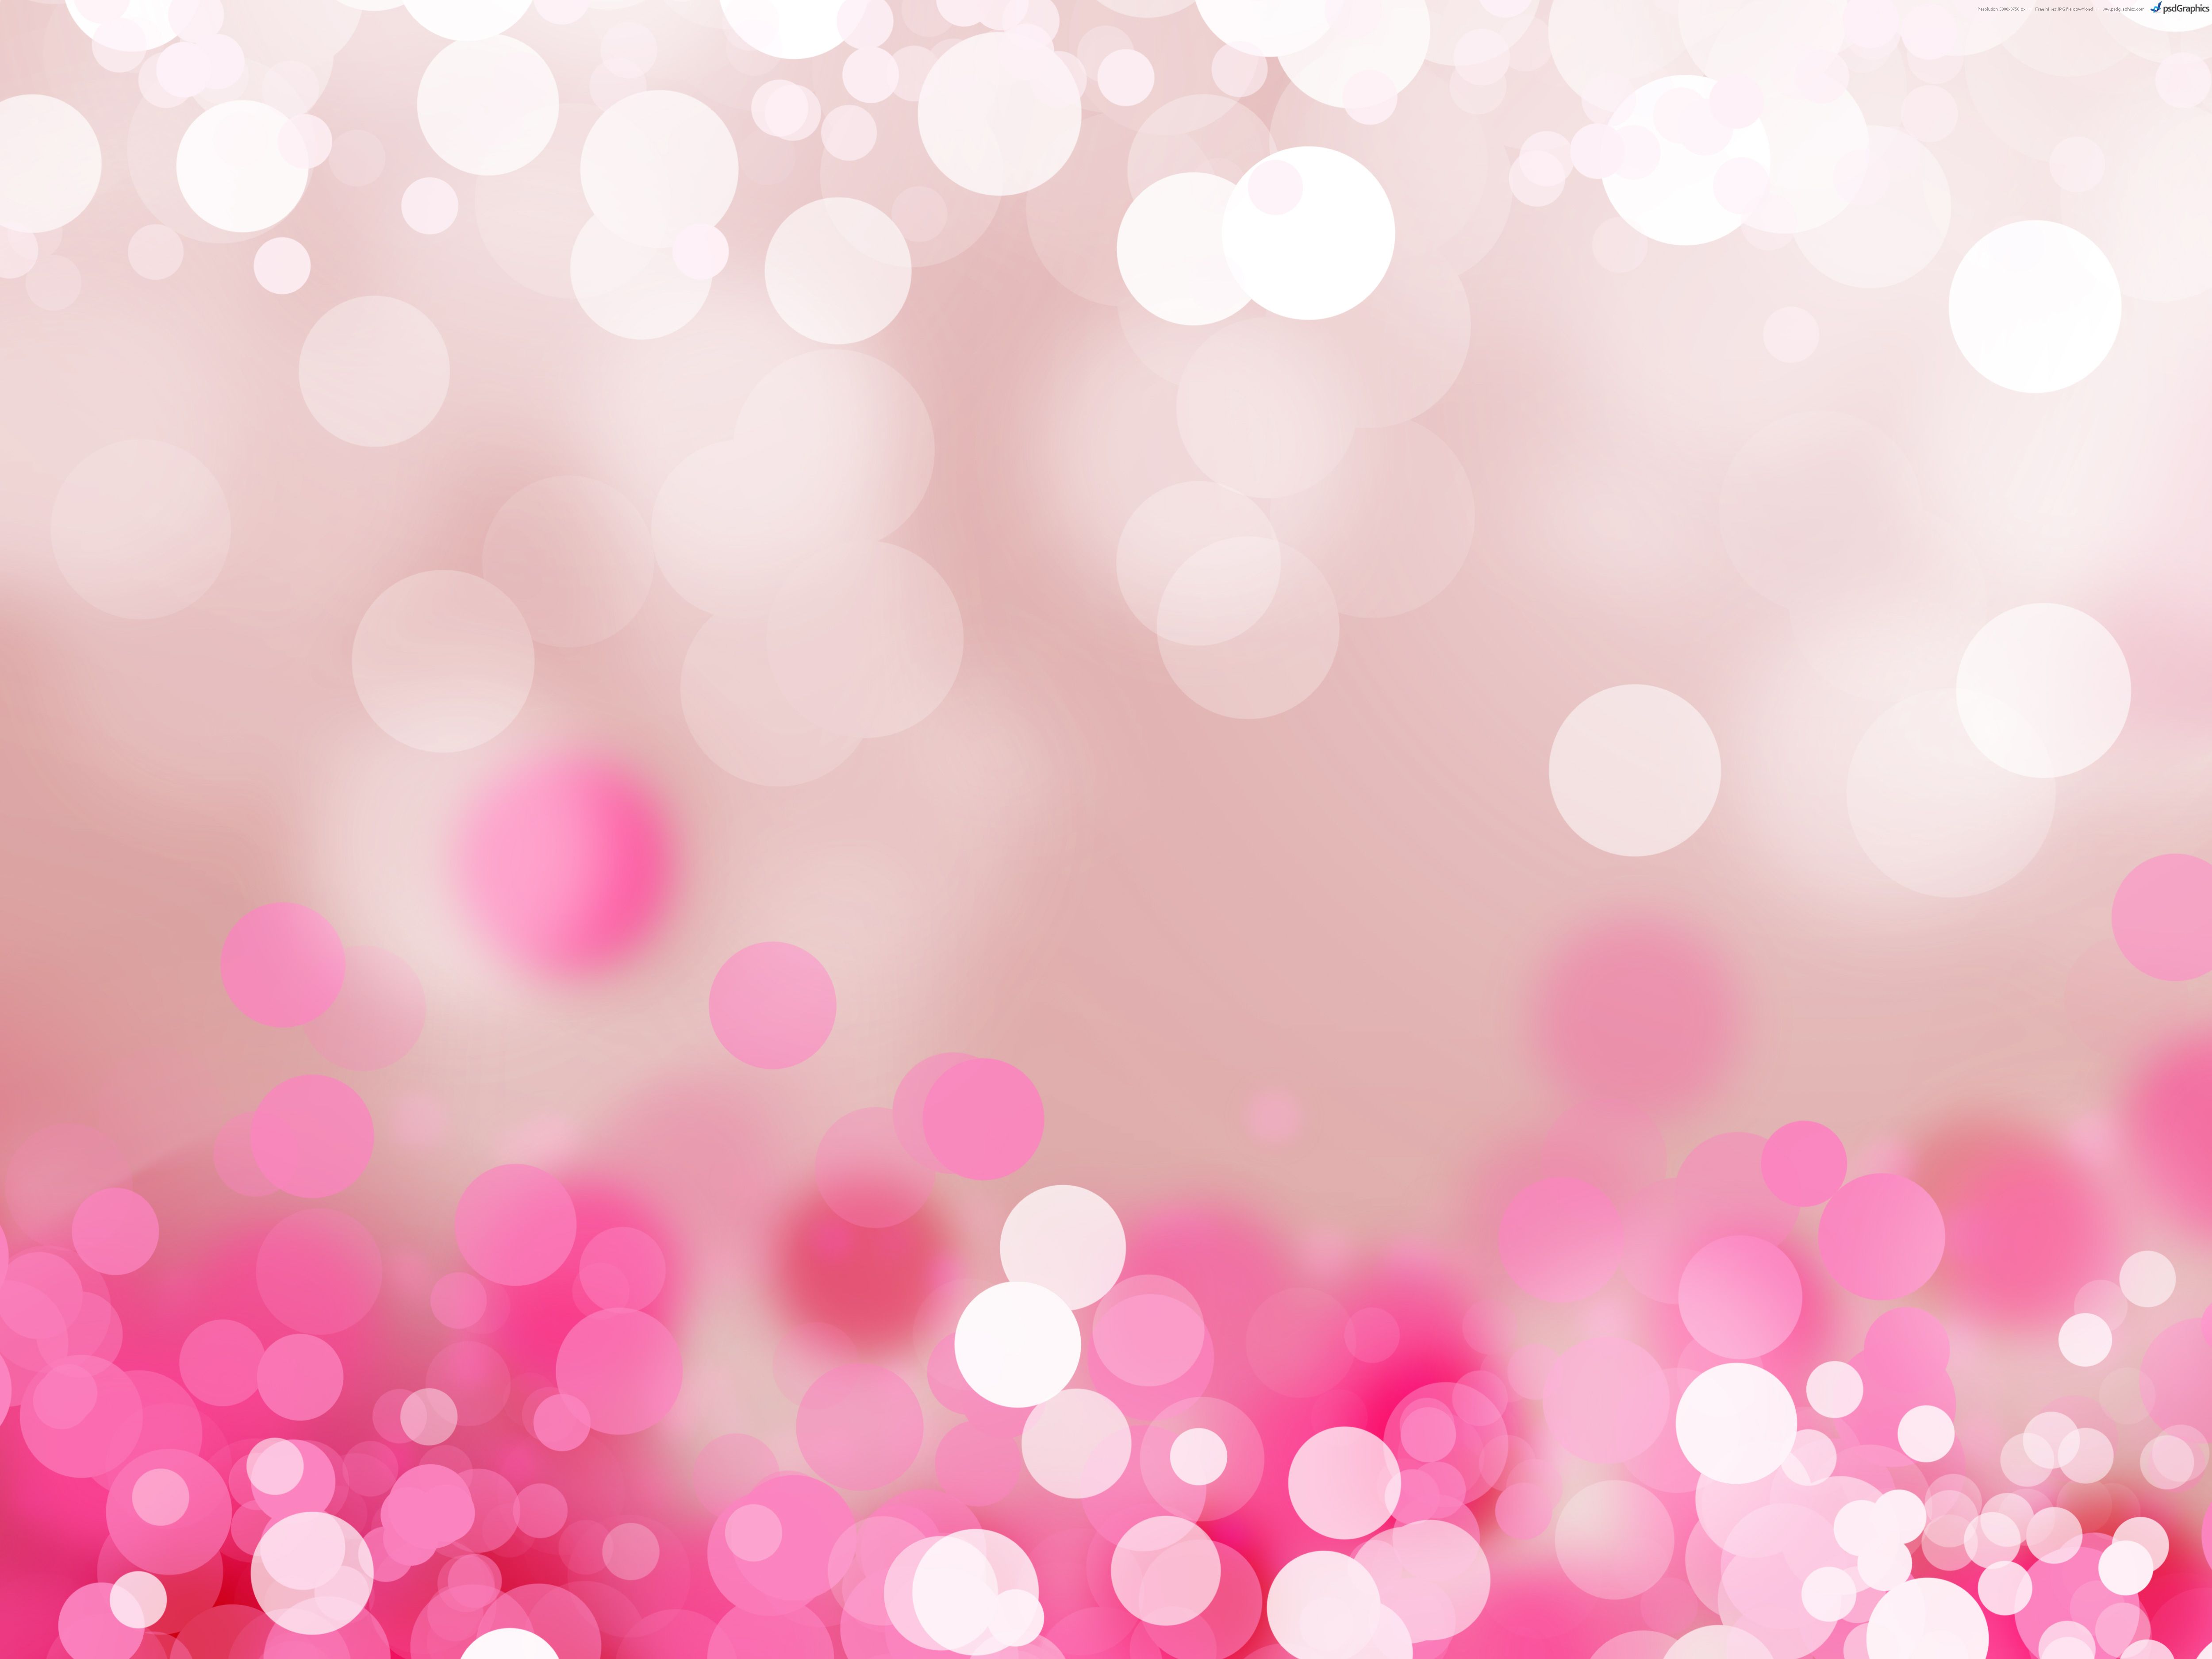 Cute Light Pink Wallpapers: Chắc chắn bạn sẽ yêu thích bức ảnh này. Hình ảnh với những chiếc điện thoại di động được trang trí với những tông màu hồng pastel nhẹ nhàng, những họa tiết động vật dễ thương sẽ mang đến cho bạn một cảm giác tuyệt vời. Nhấp chuột để tận hưởng bức ảnh này ngay bây giờ!